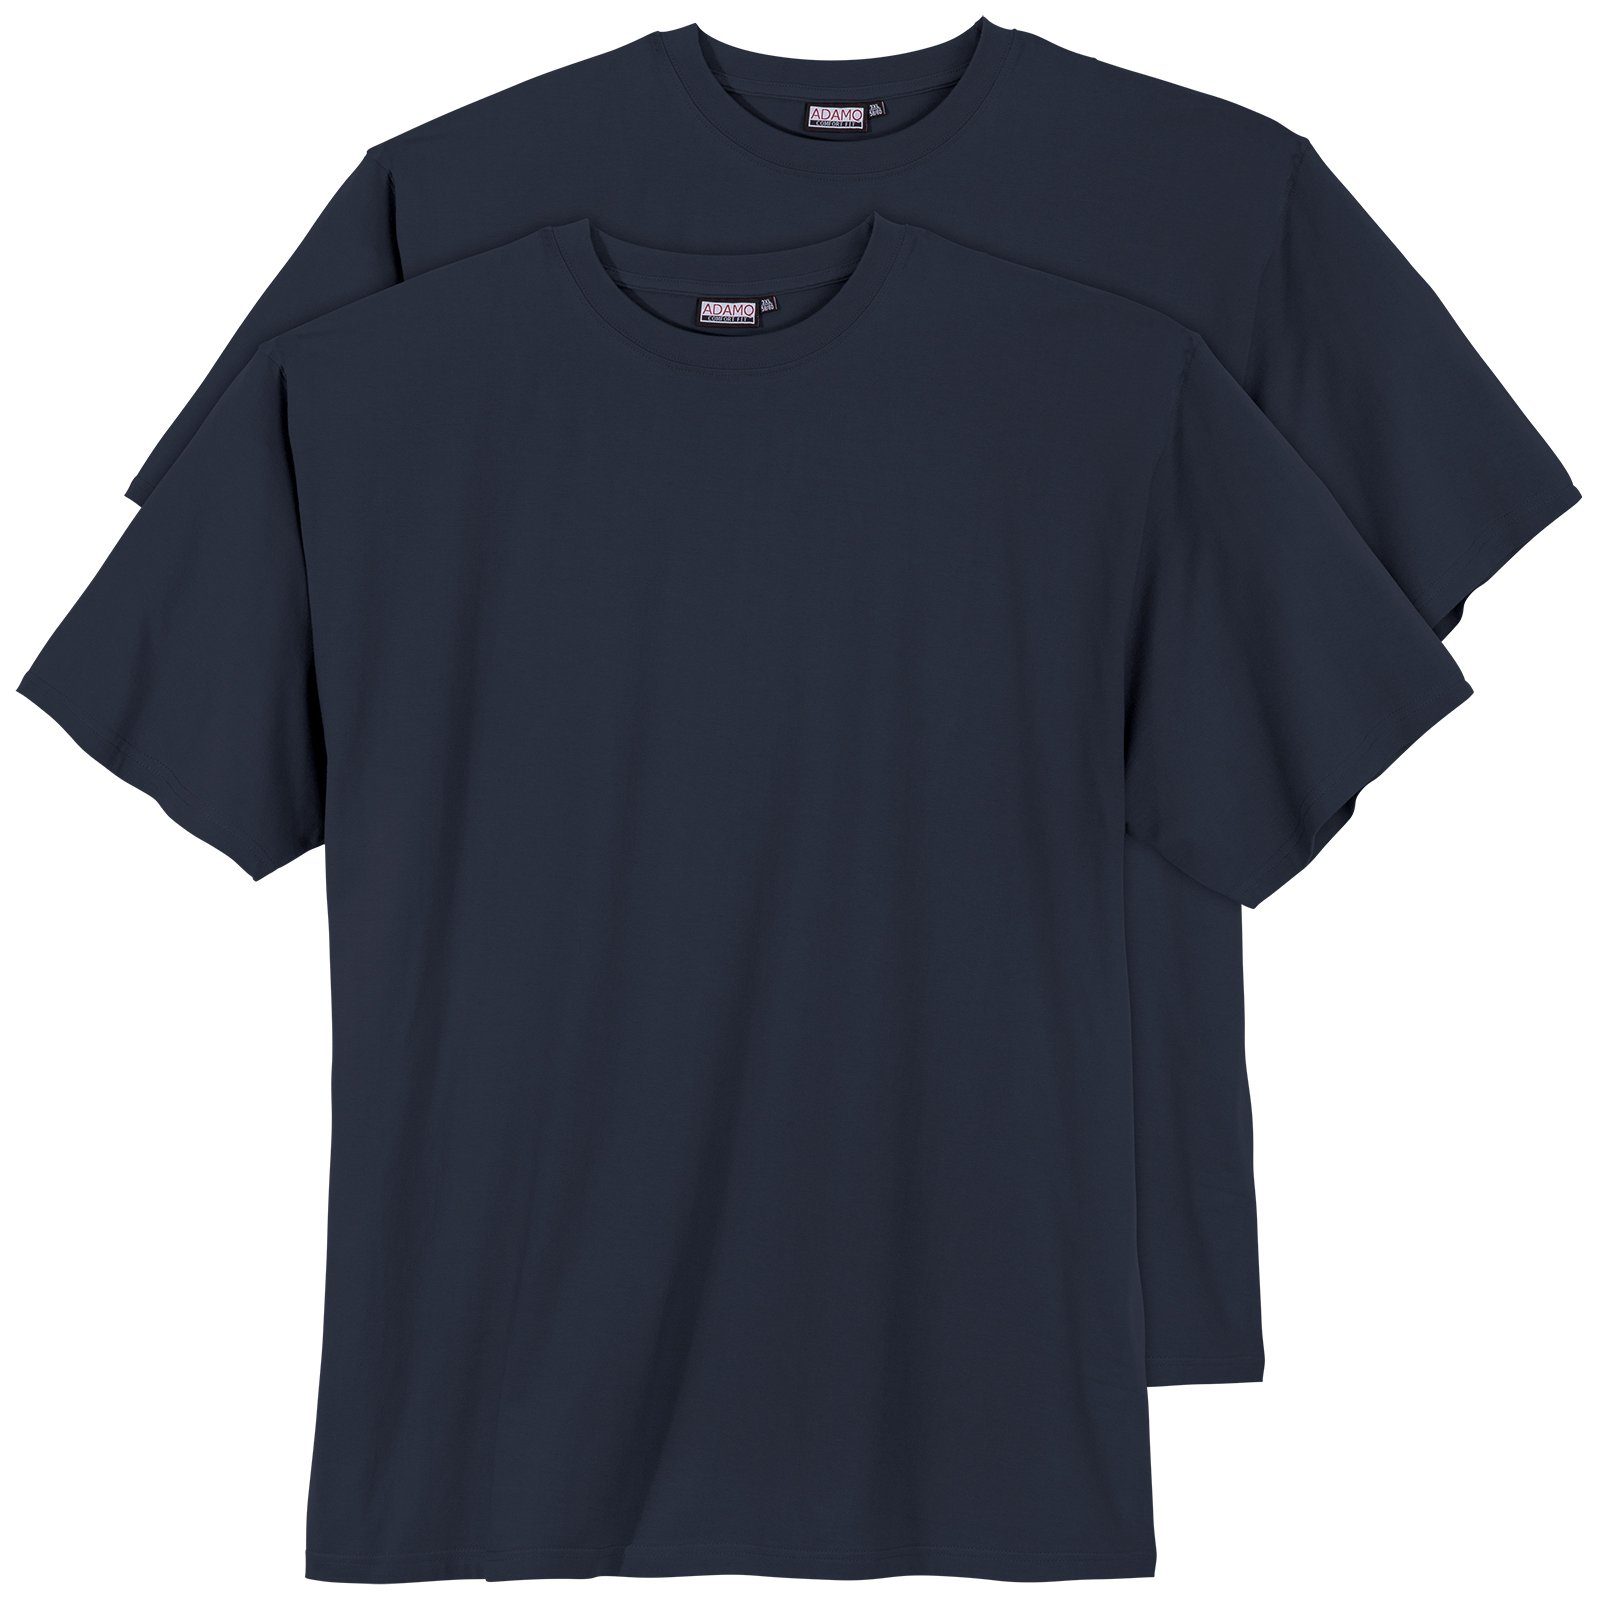 ADAMO Rundhalsshirt Große Größen Herren Adamo Fashion T-Shirt 2er Pack dunkelblau Marlon